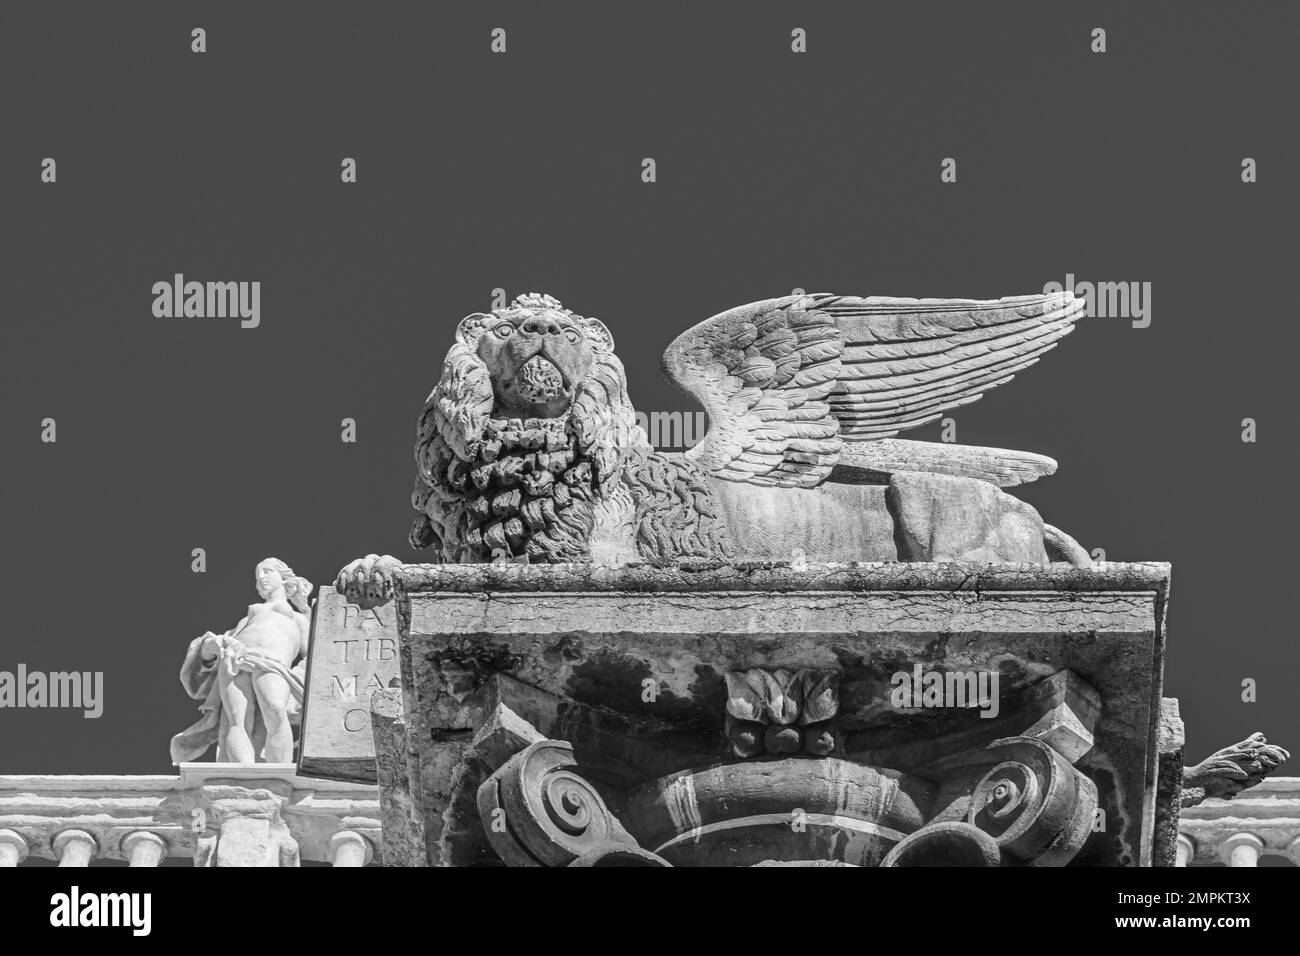 La statua del leone alare di San Marco, palazzo Maffei di architettura barocca, costruito nel 1668 - Verona, regione Veneto - Italia settentrionale - Europa Foto Stock